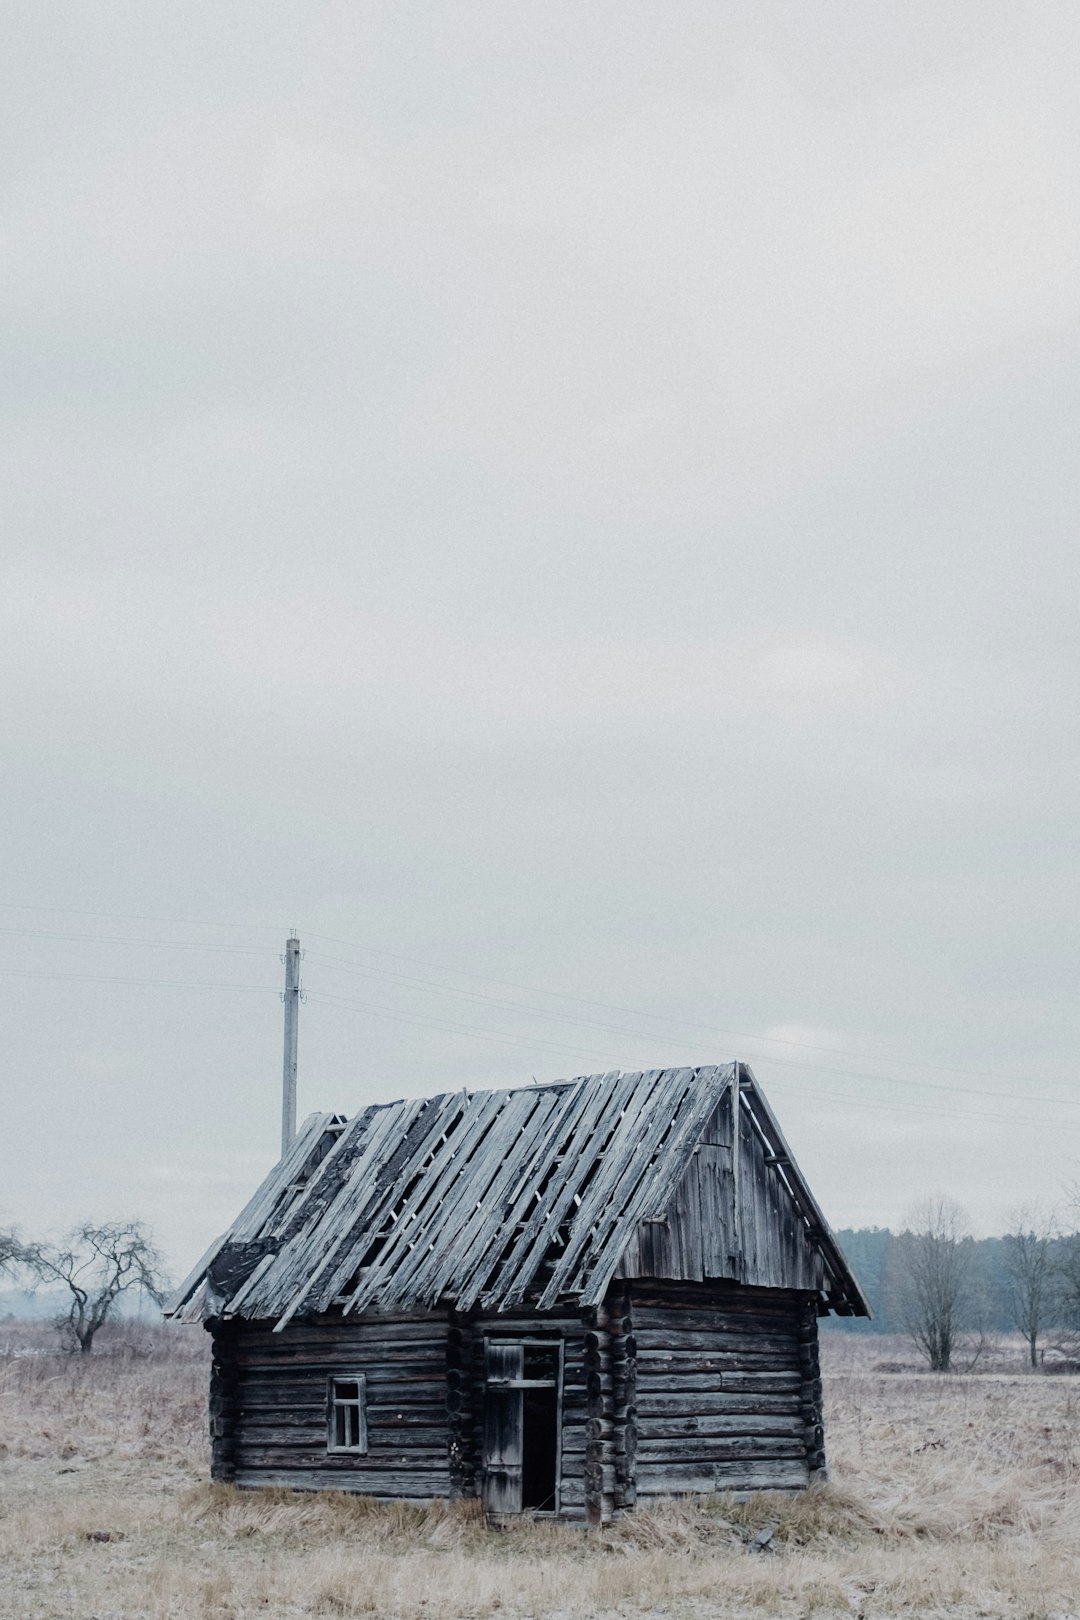 black wooden house near bare trees under white sky during daytime